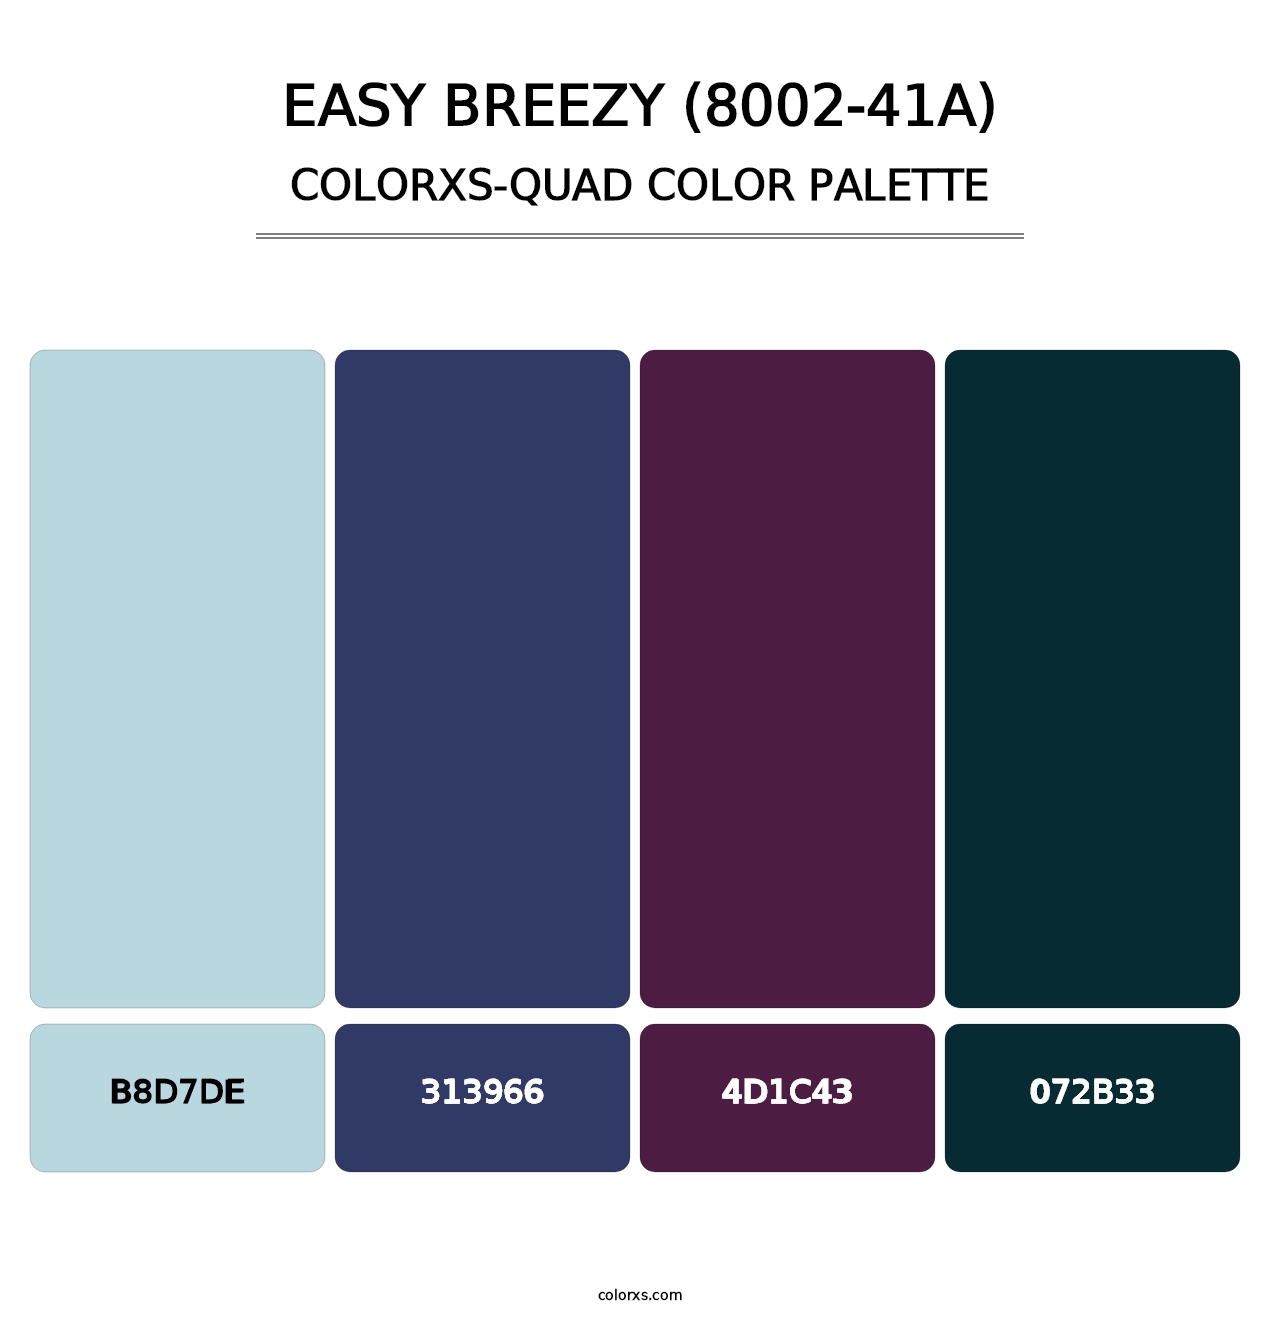 Easy Breezy (8002-41A) - Colorxs Quad Palette